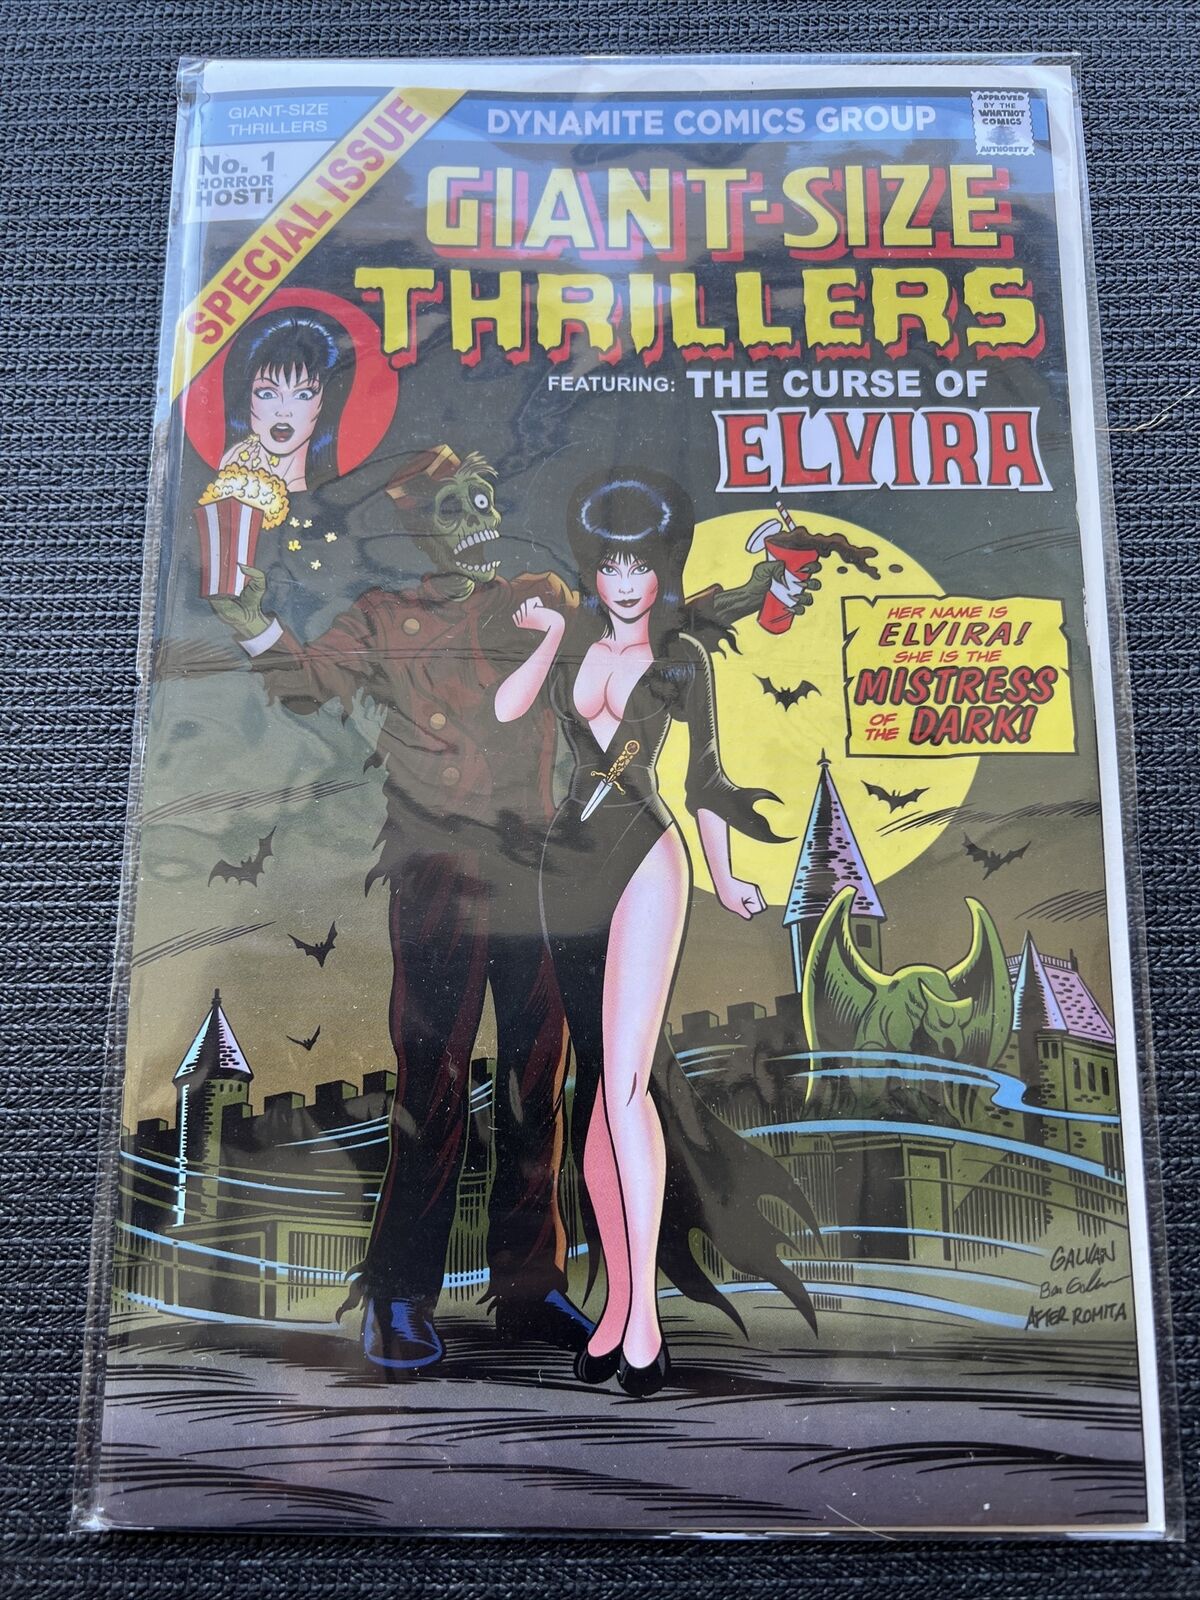 Curse Of Elvira Mistress Dark Horror Thriller Special Issue Zombie Usher Popcorn